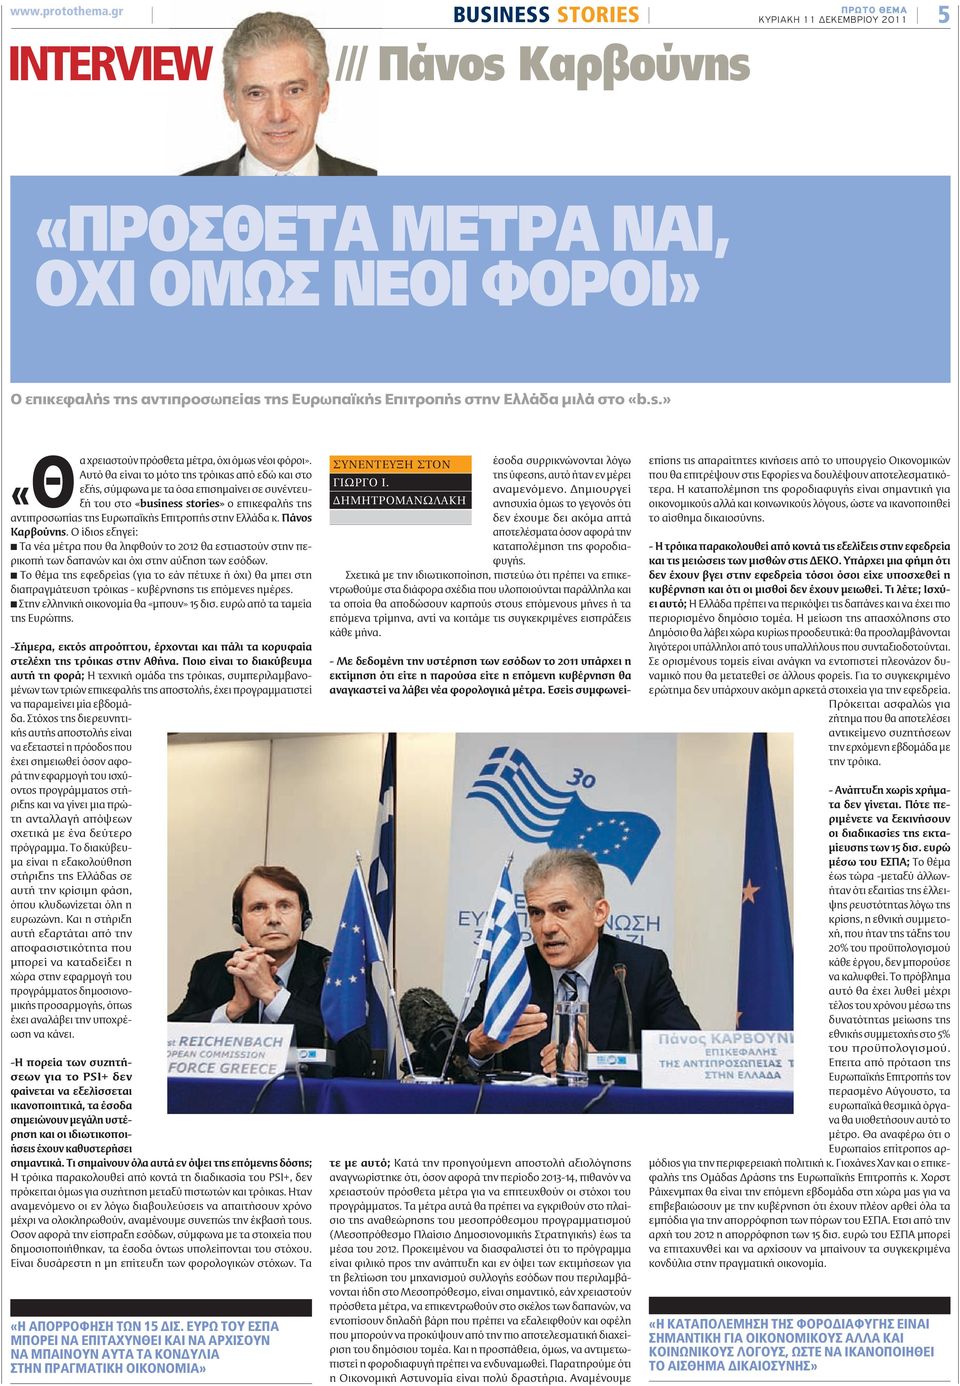 Ελλάδα μιλά στο «b.s.» χρειαστούν πρόσθετα μέτρα, όχι όμως νέοι φόροι».